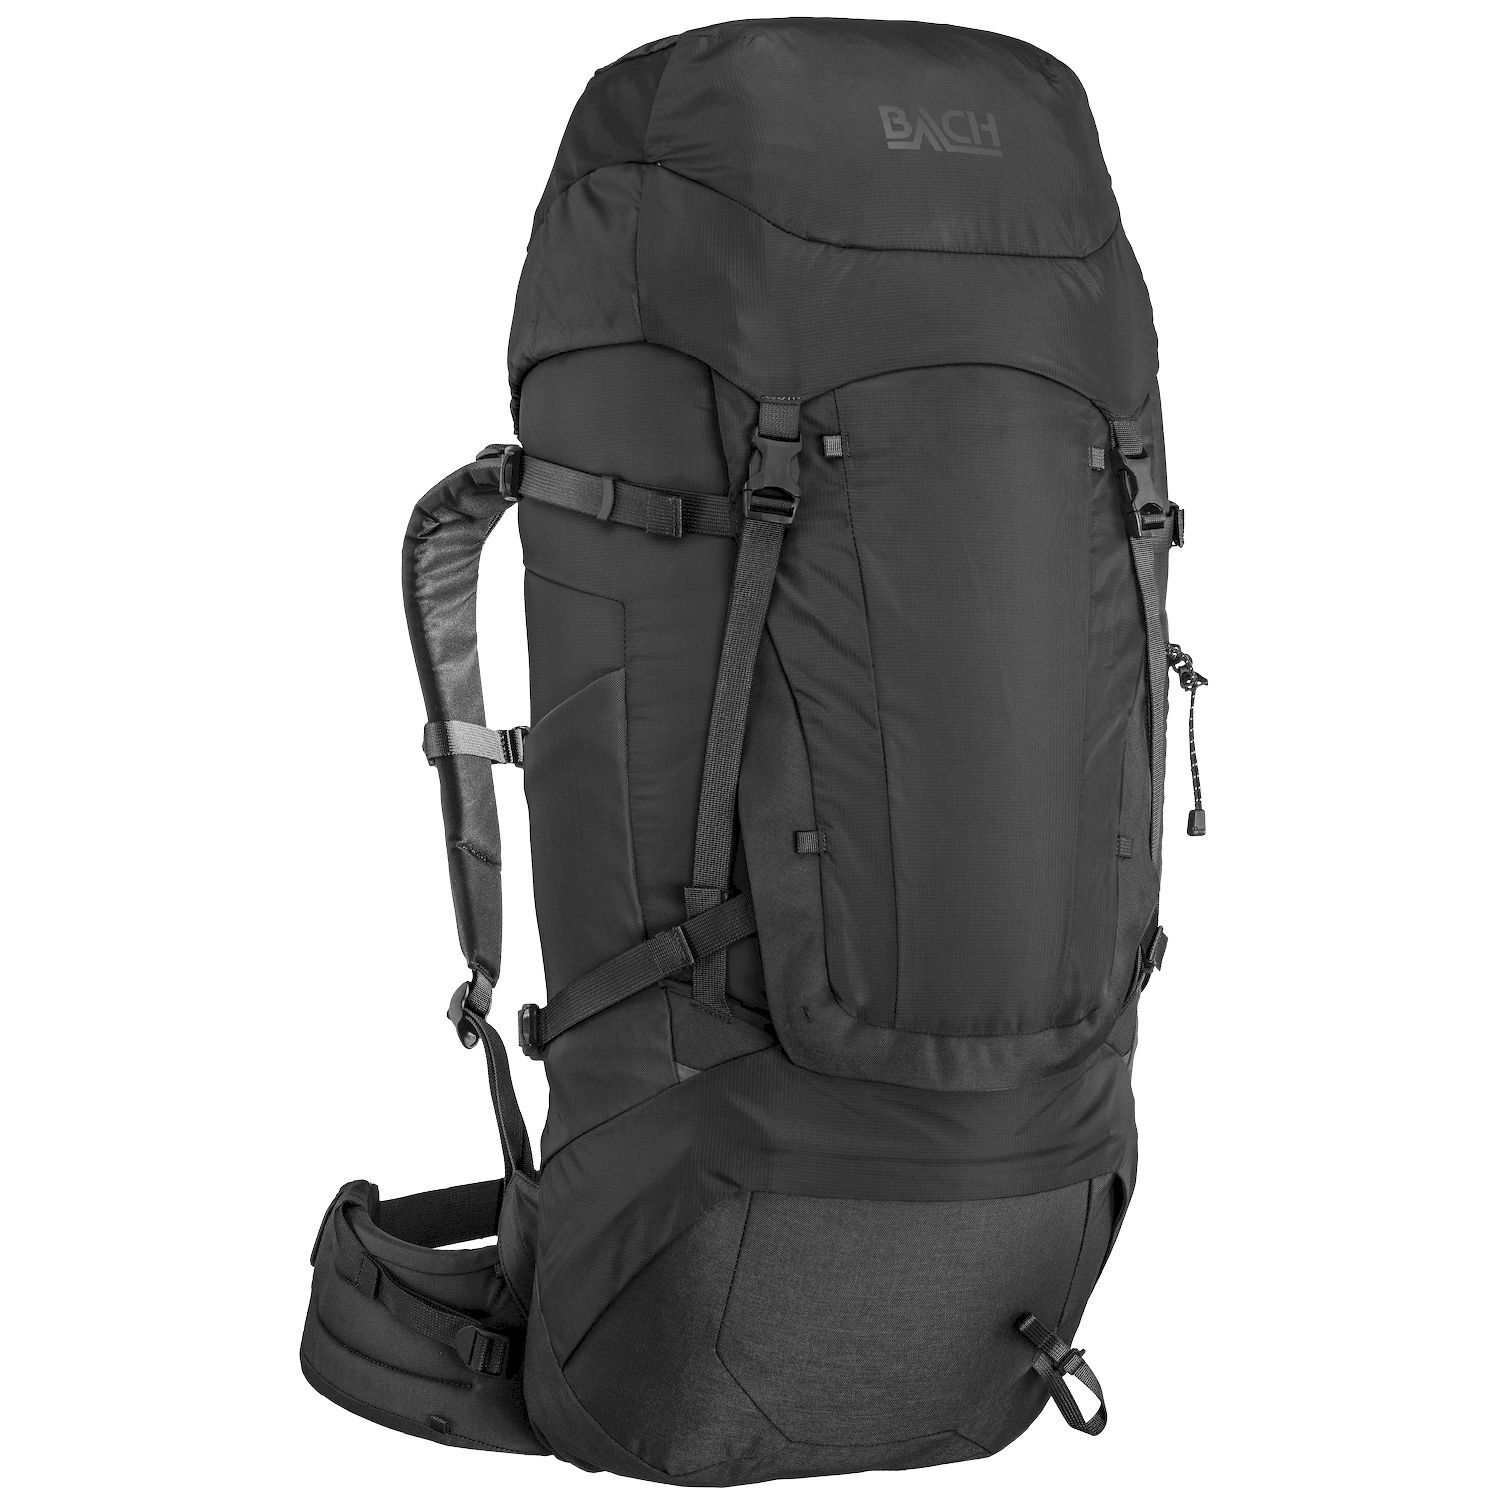 Bach Pack Daydream 50 - Hiking backpack